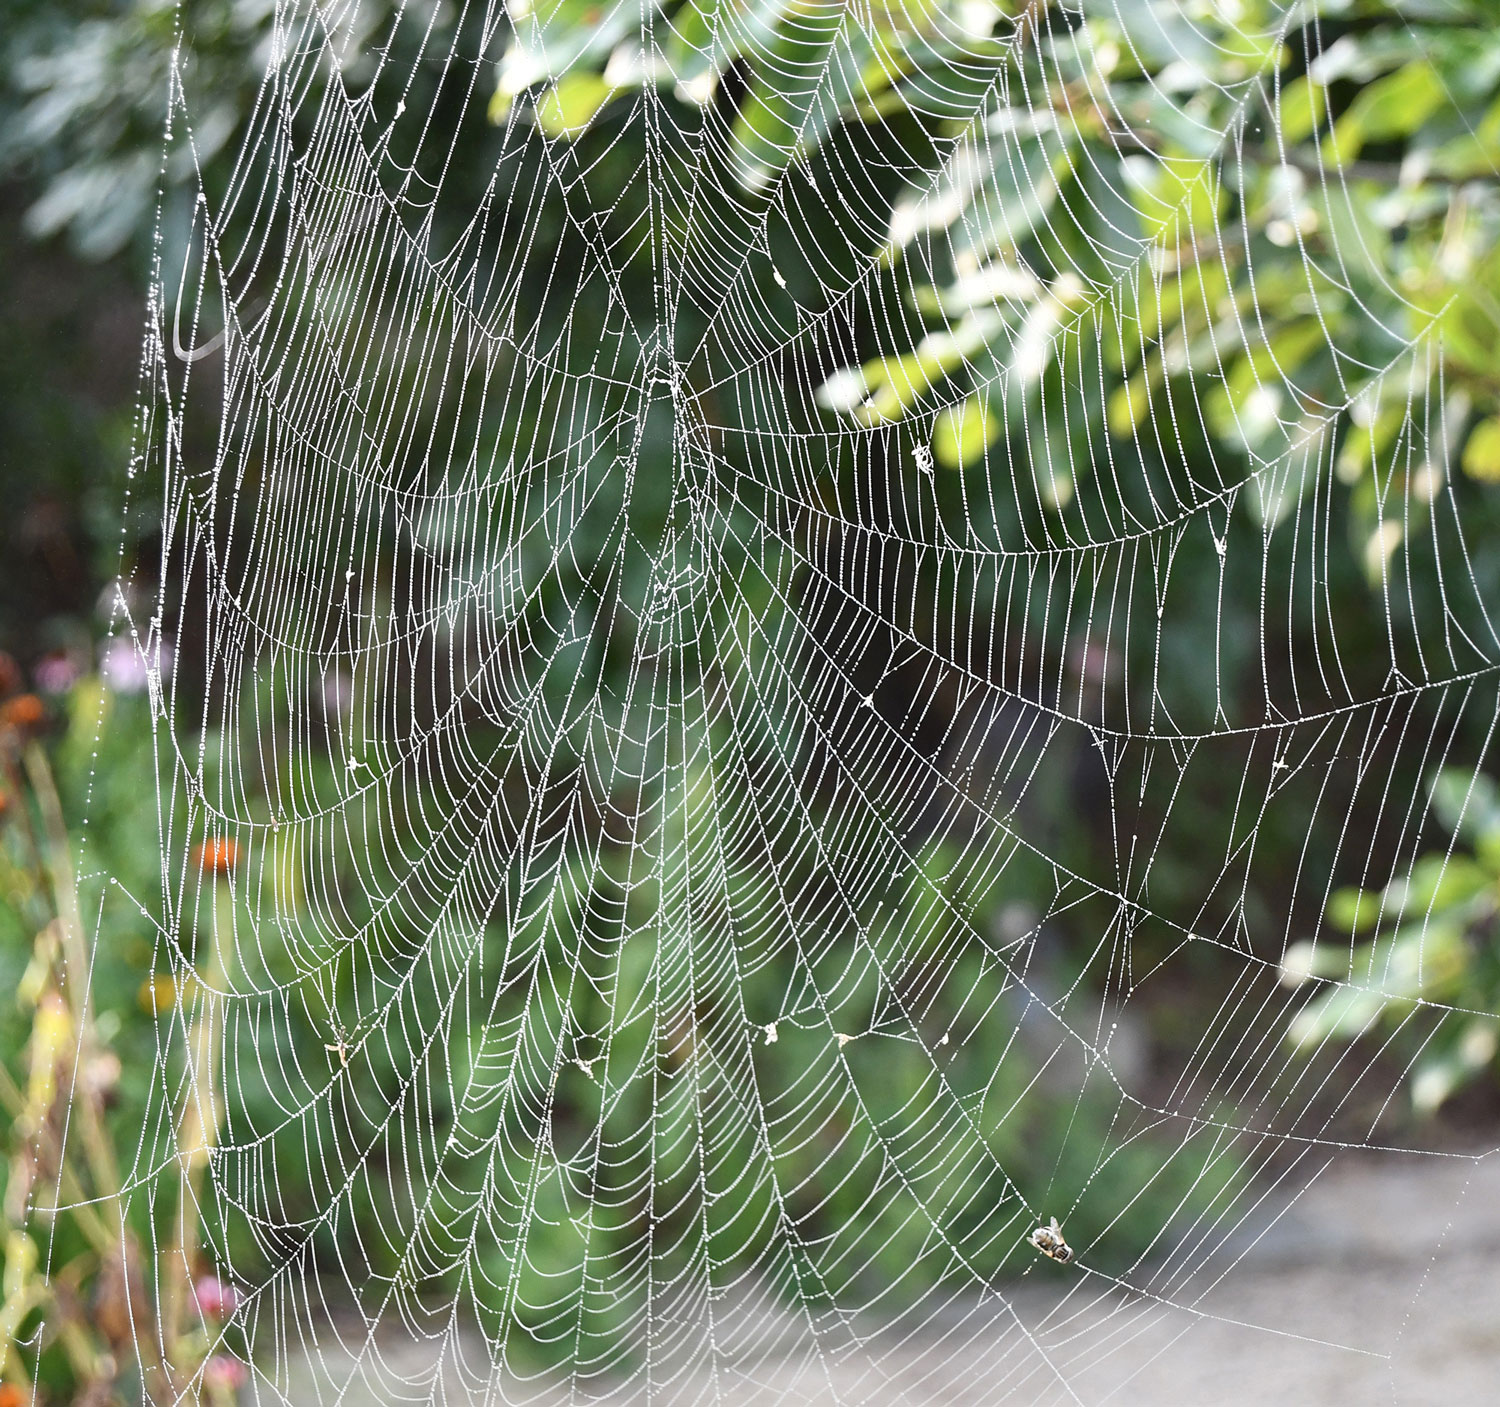 Types of Spider Webs